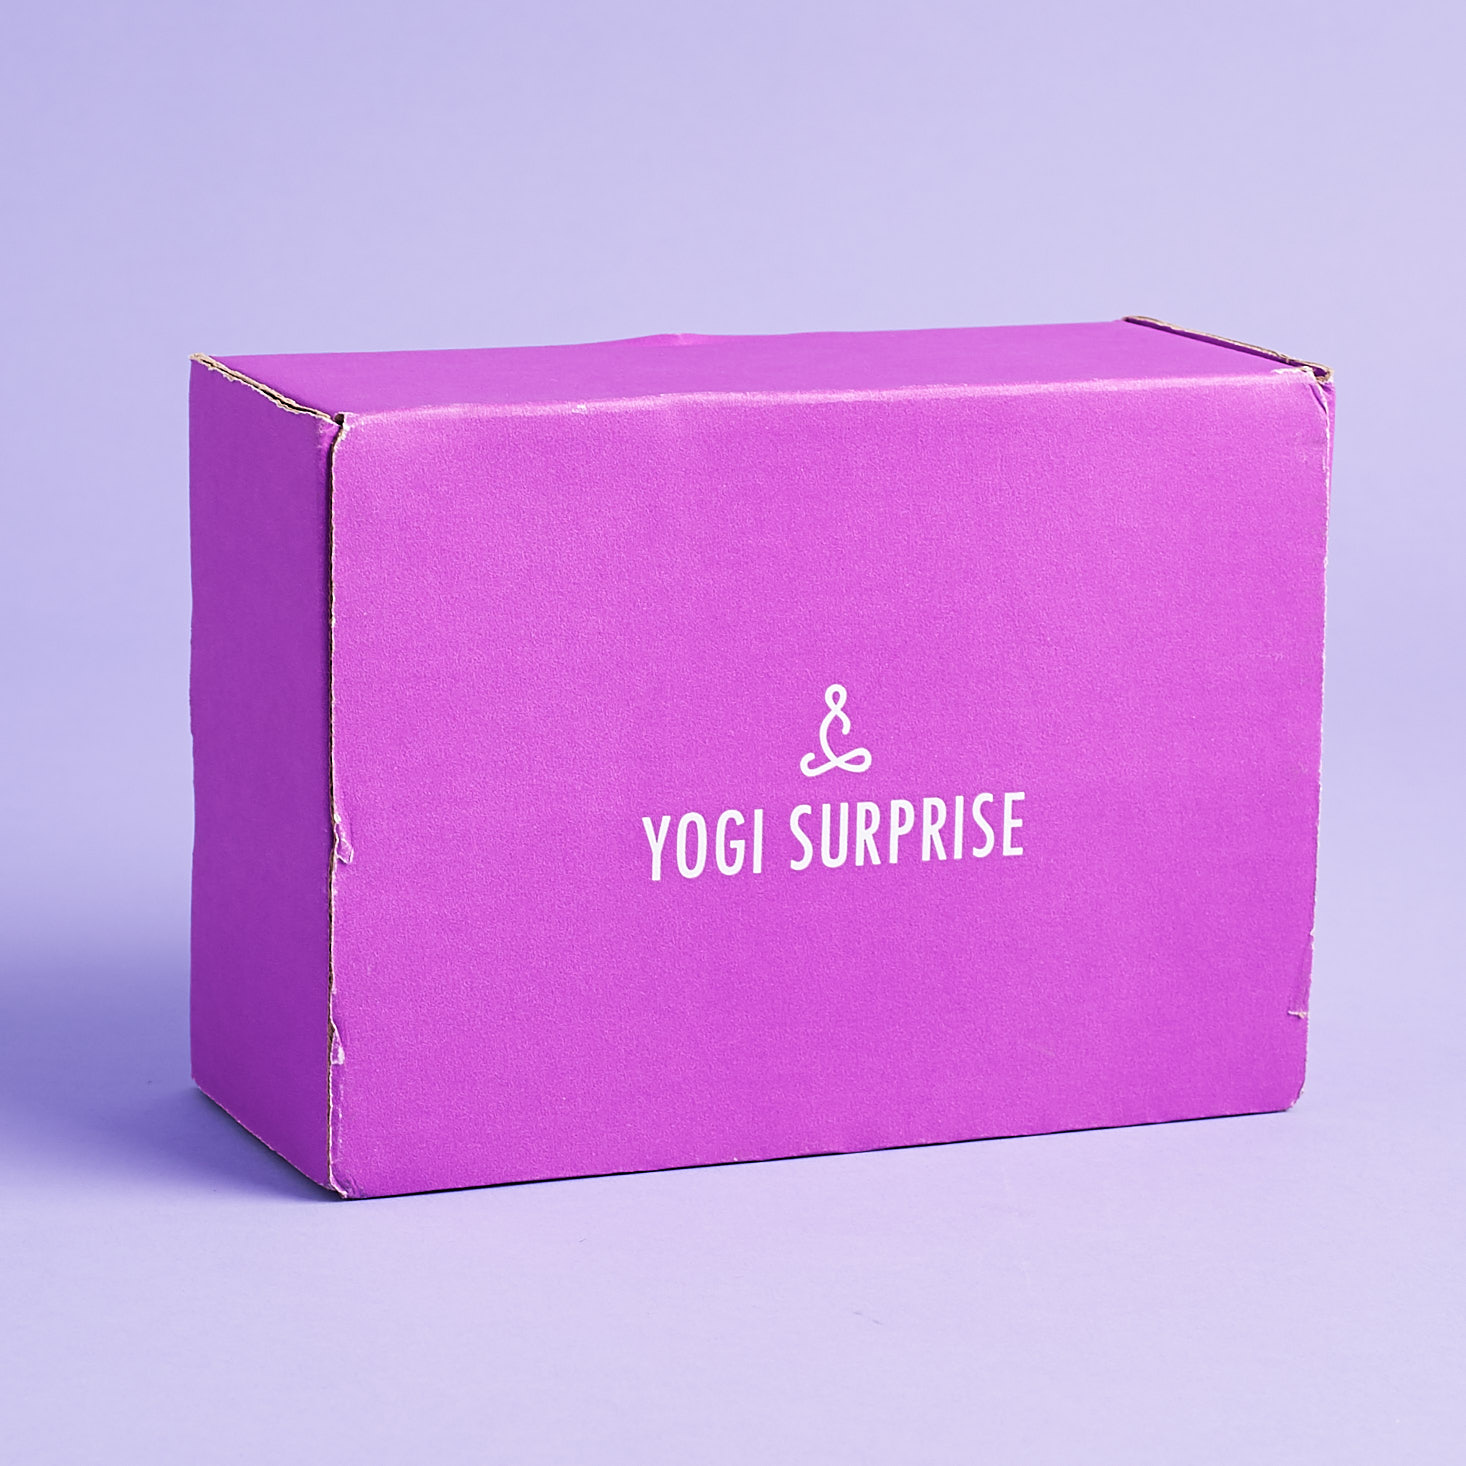 Yogi Surprise Subscription Box Review + Coupon – August 2018